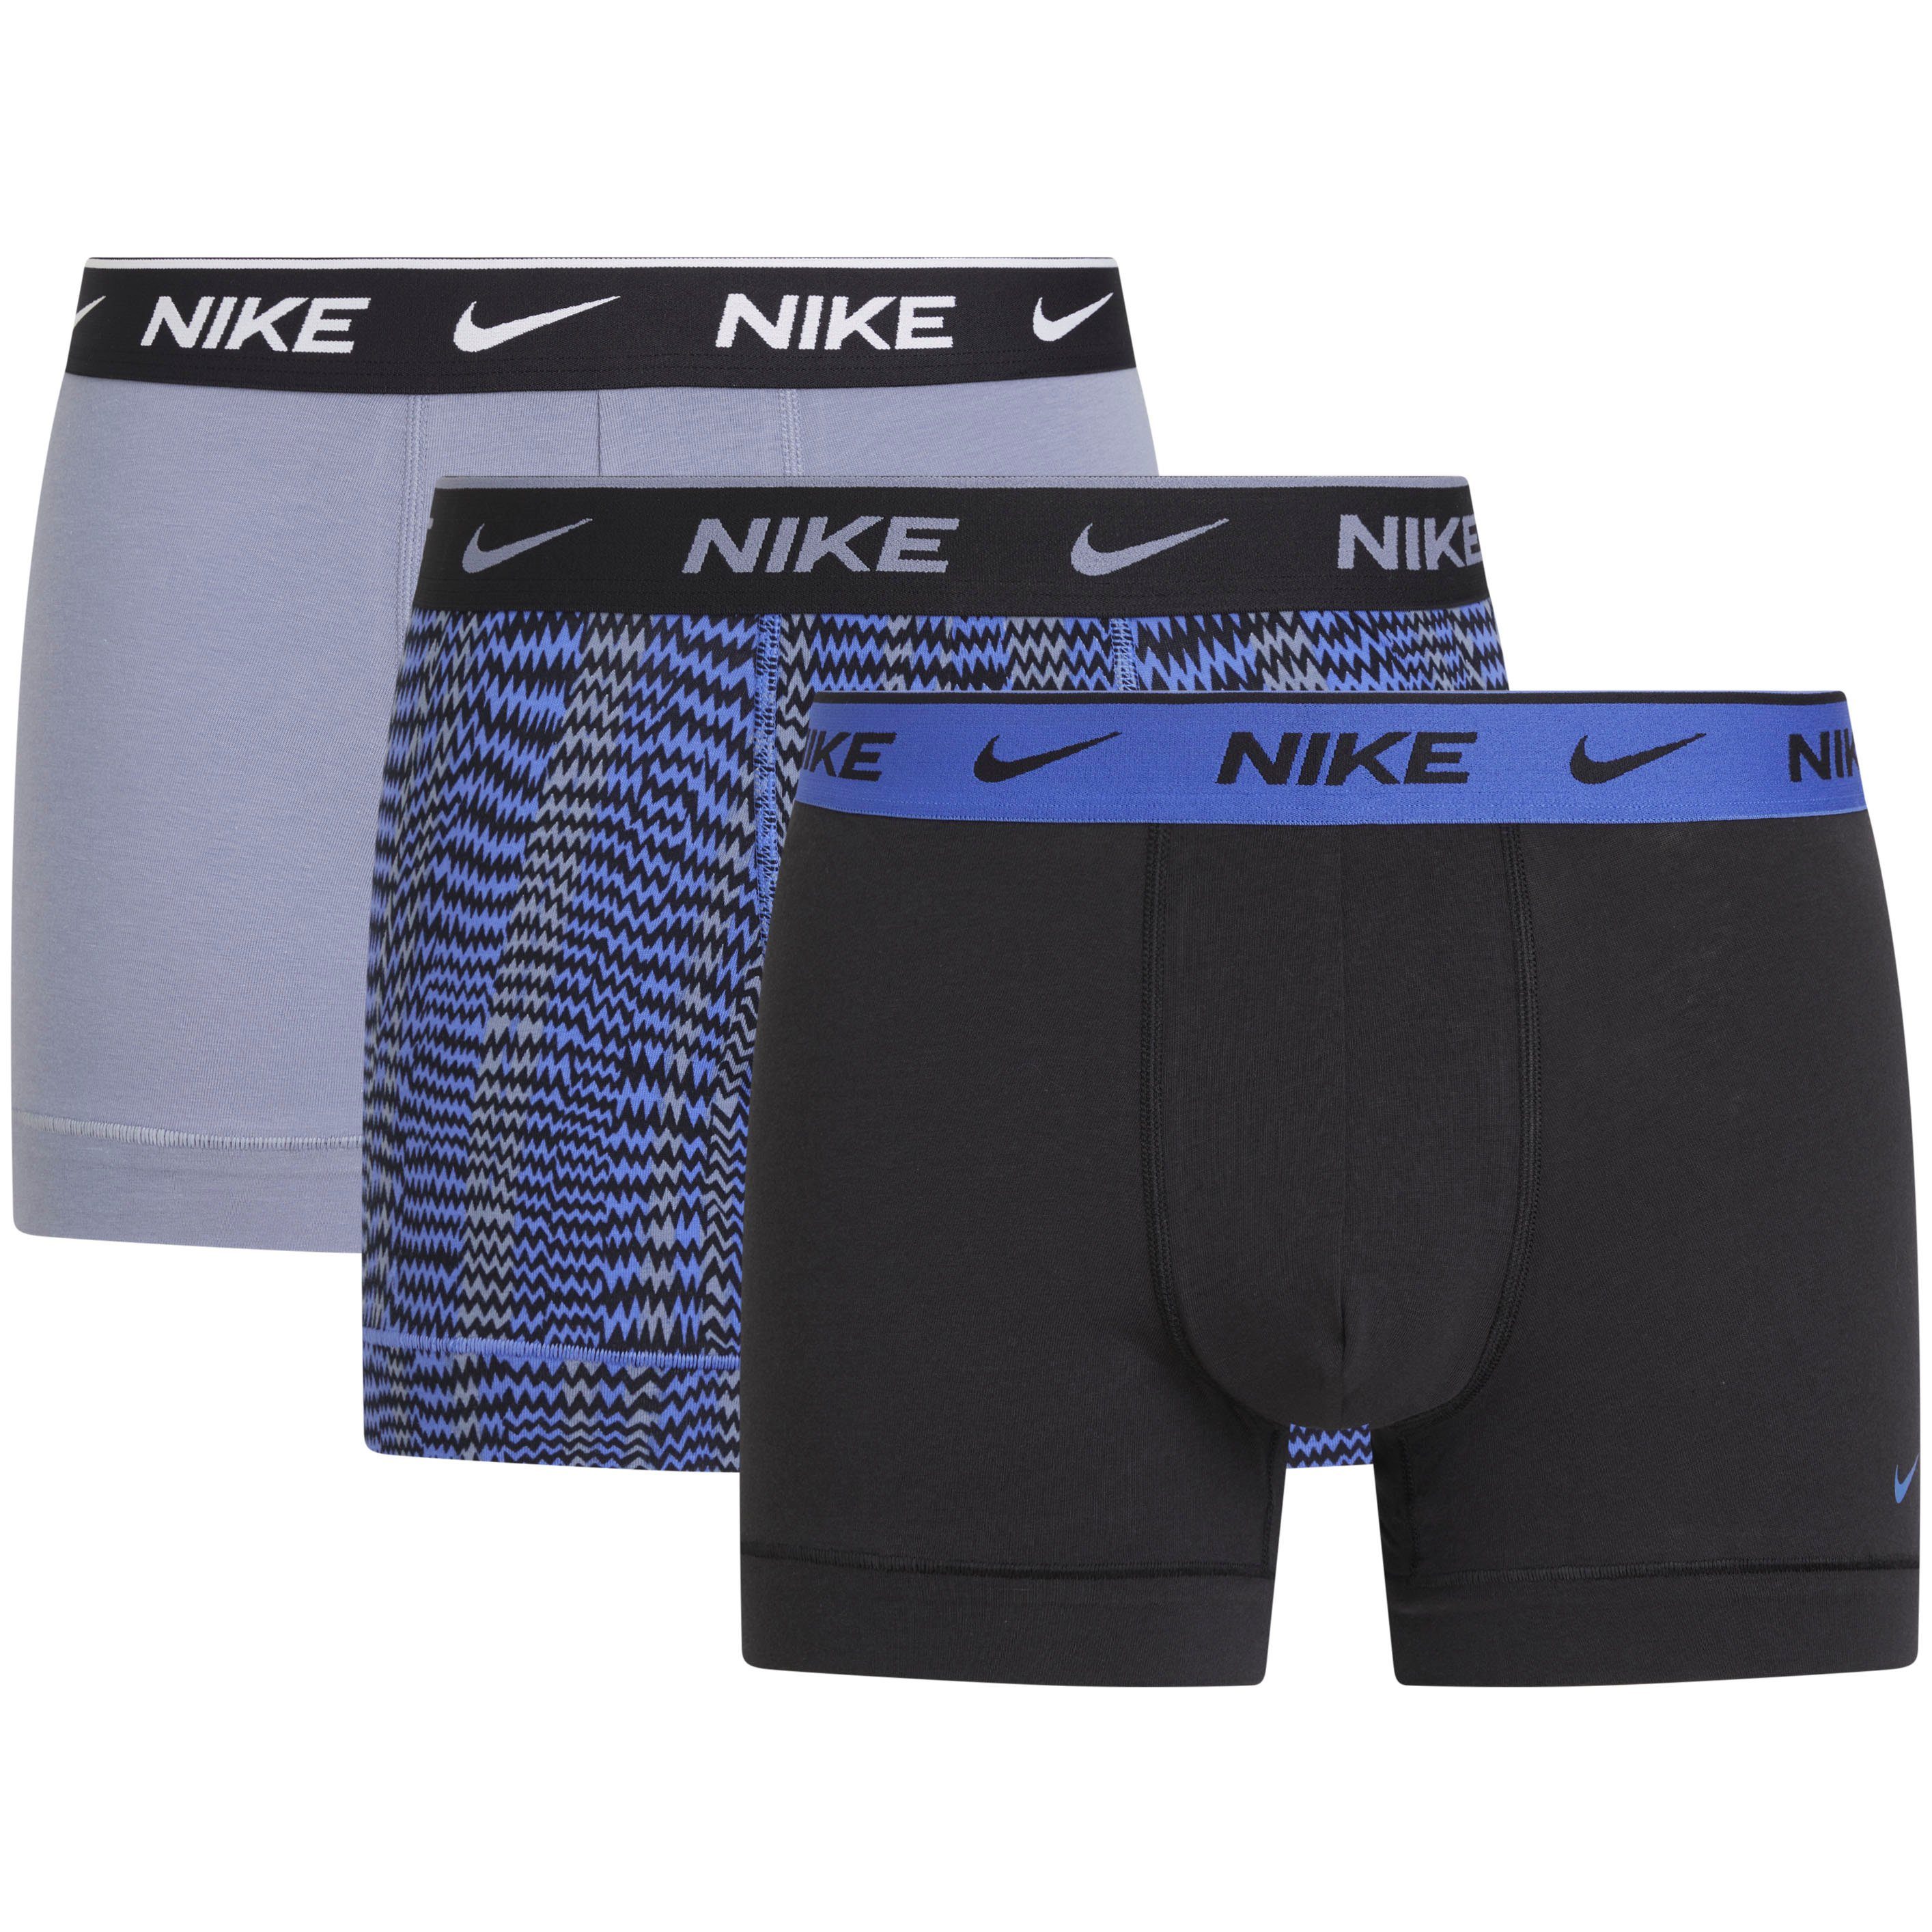 Nike Herrenunterwäsche online kaufen | OTTO